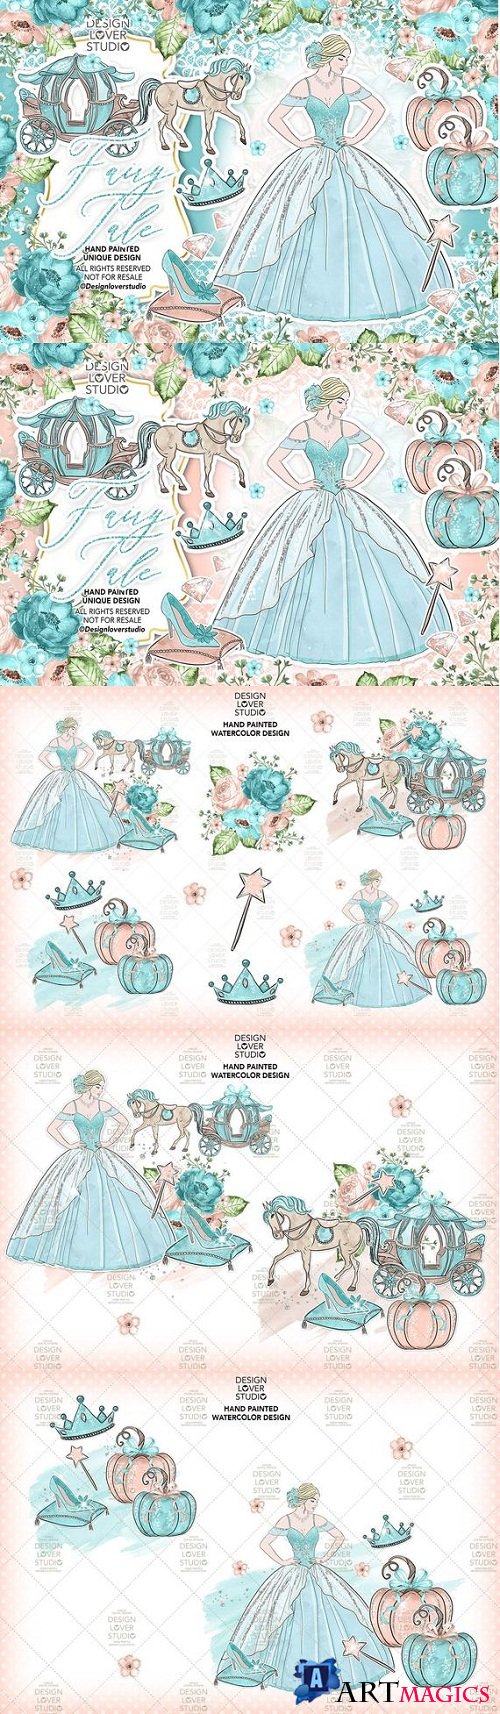 Fairy Tale design